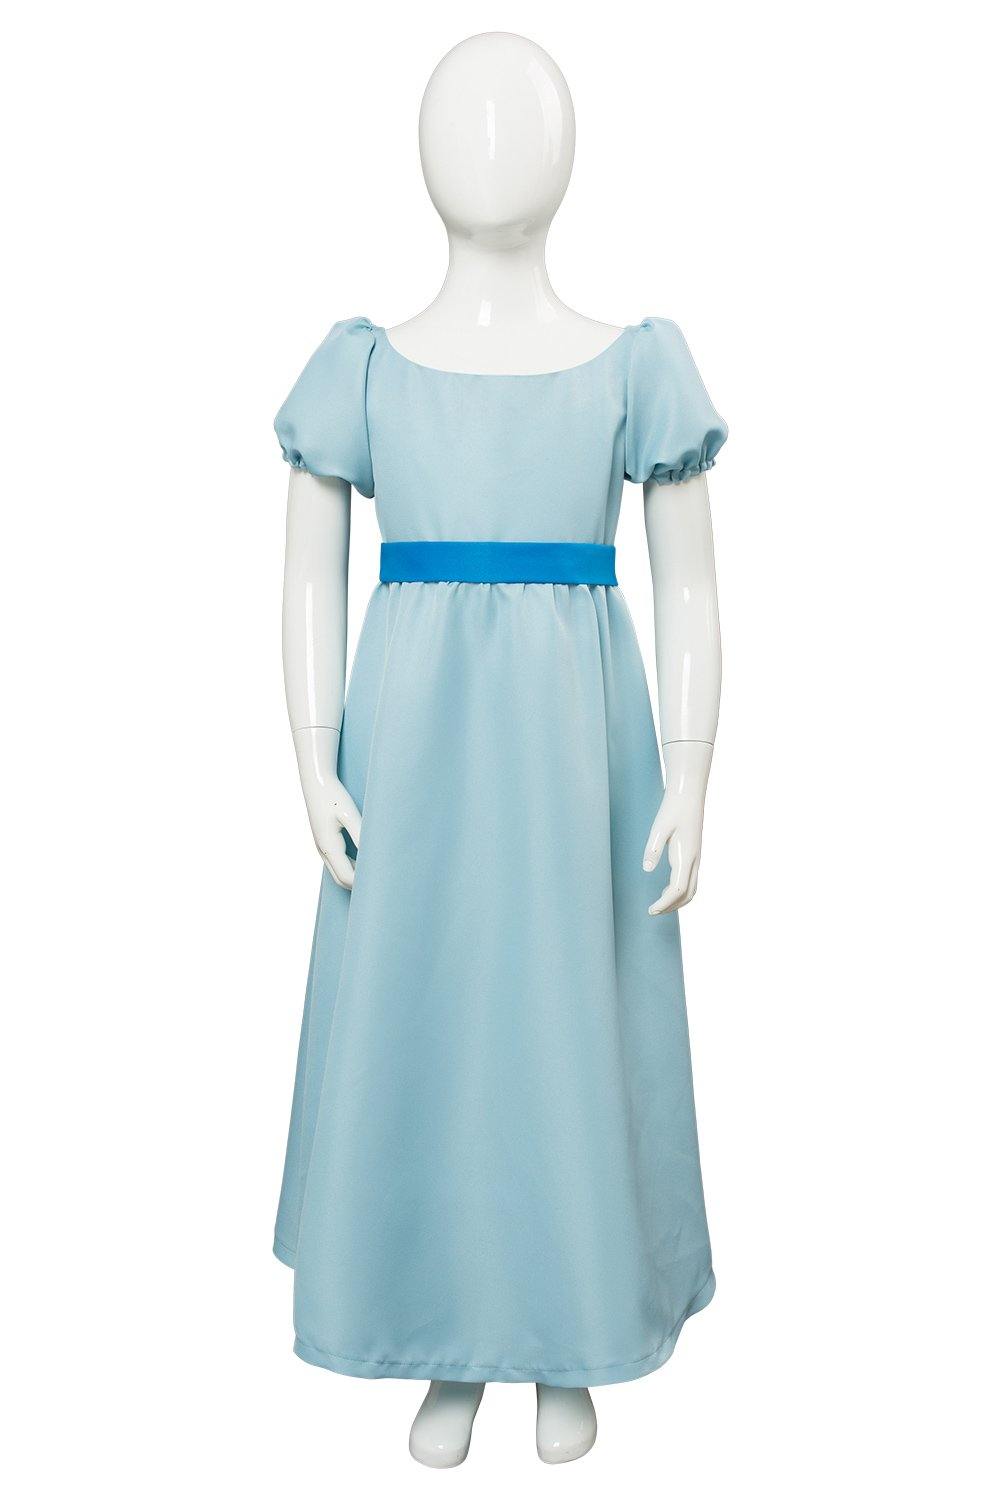 Nimmerland Peter Pan Wendy Darling Kleid Cosplay Kostüm Blau für Kinder - cosplaycartde